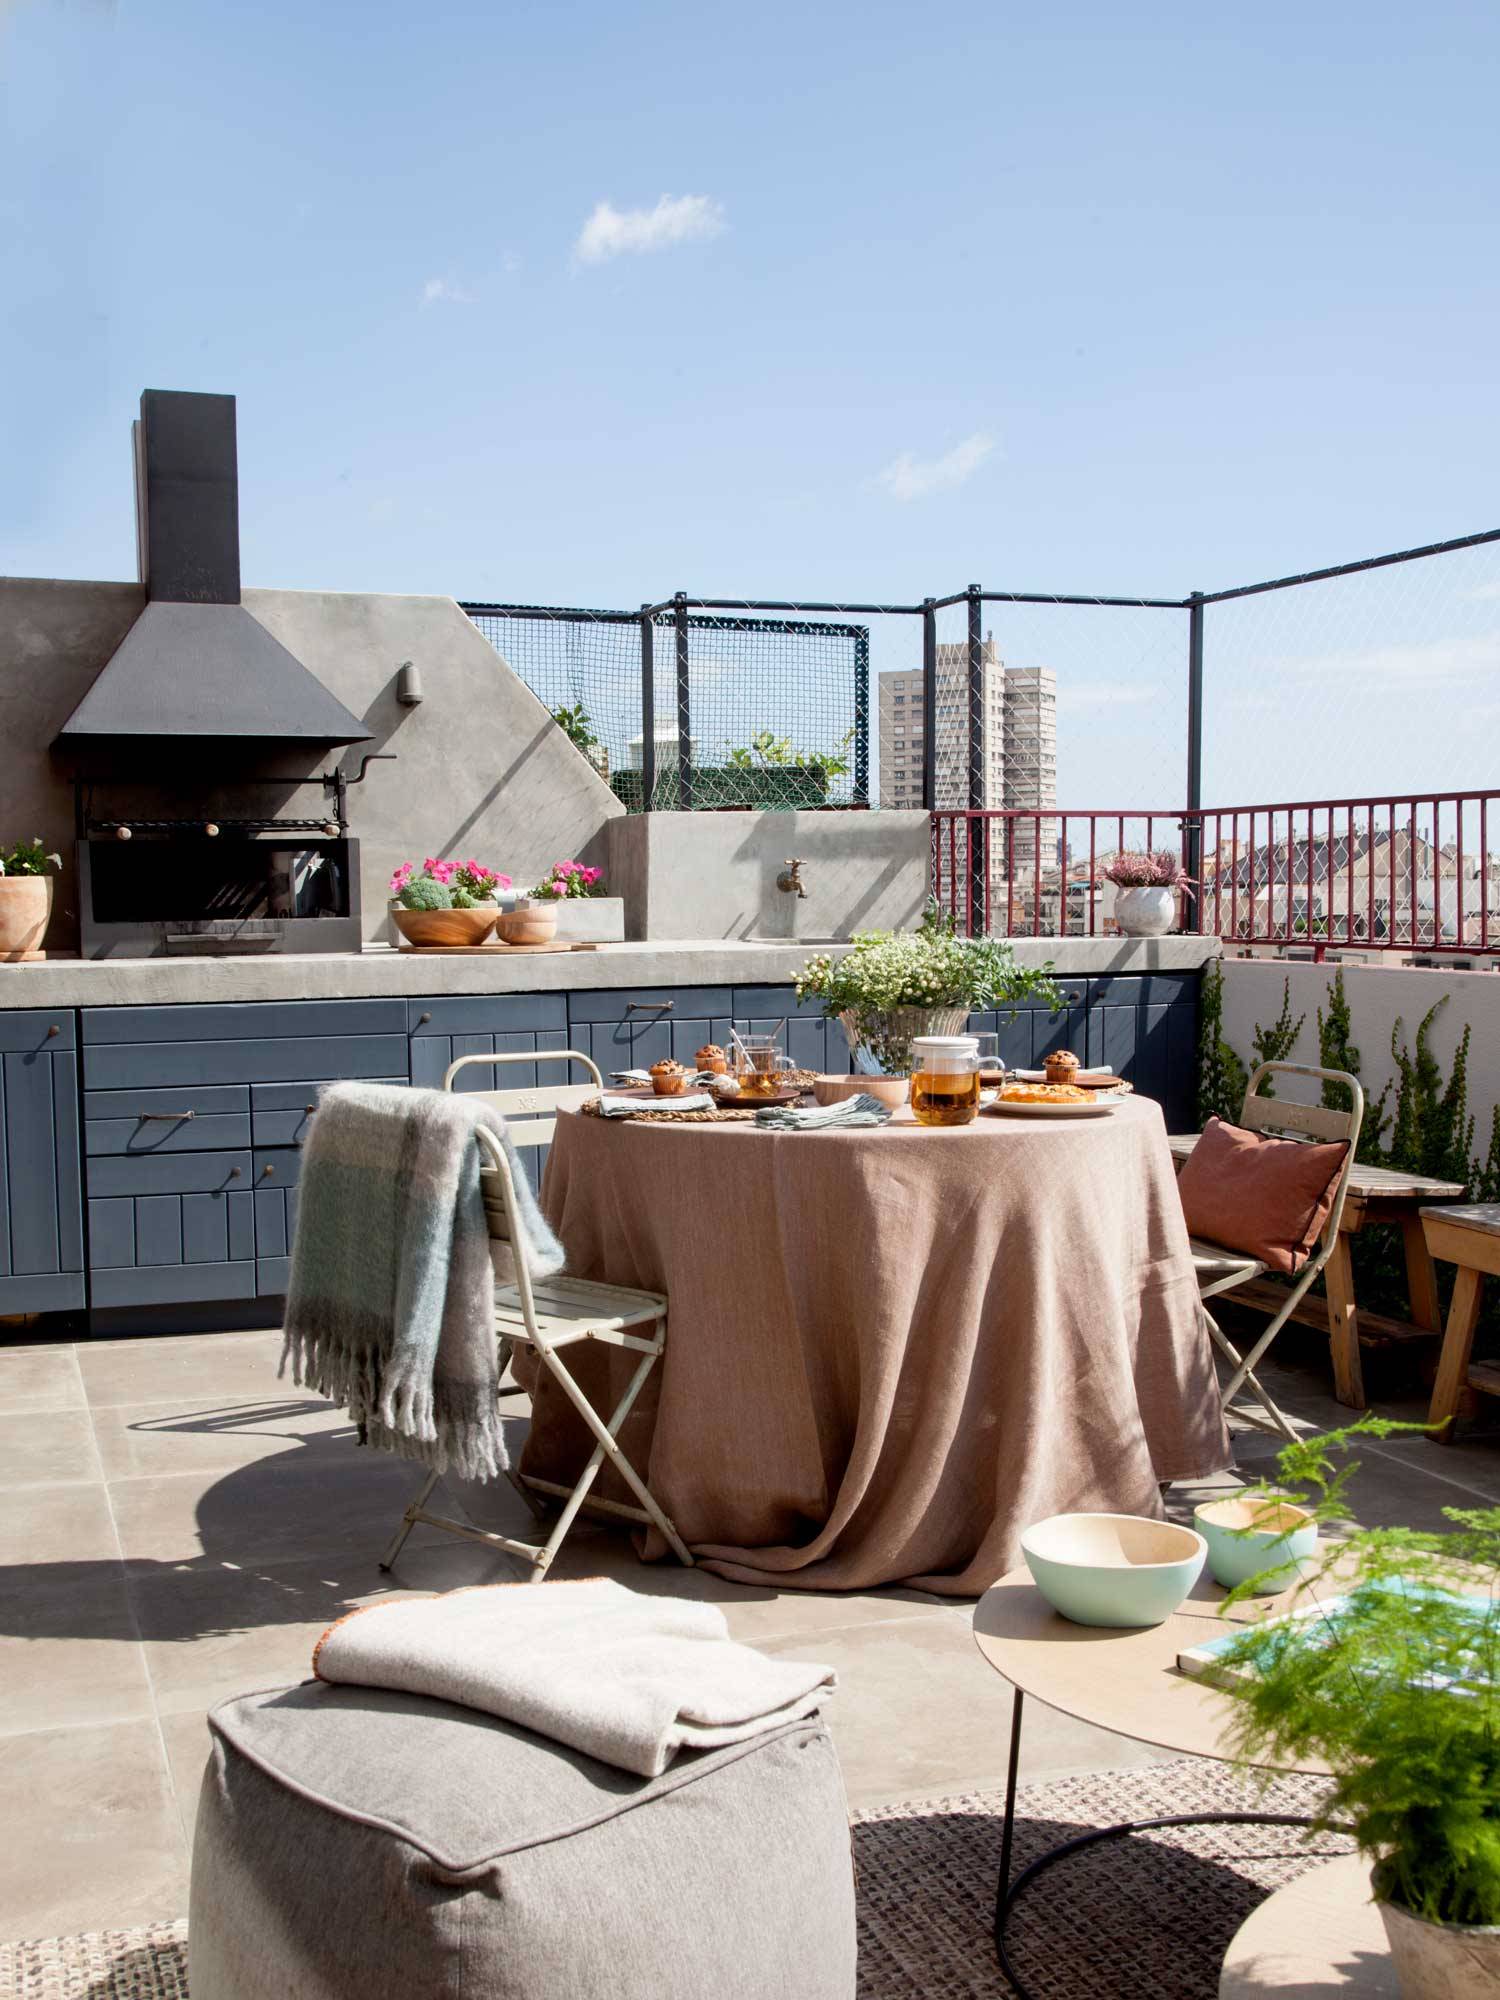 Terraza con cocina al aire libre junto al comedor exterior.